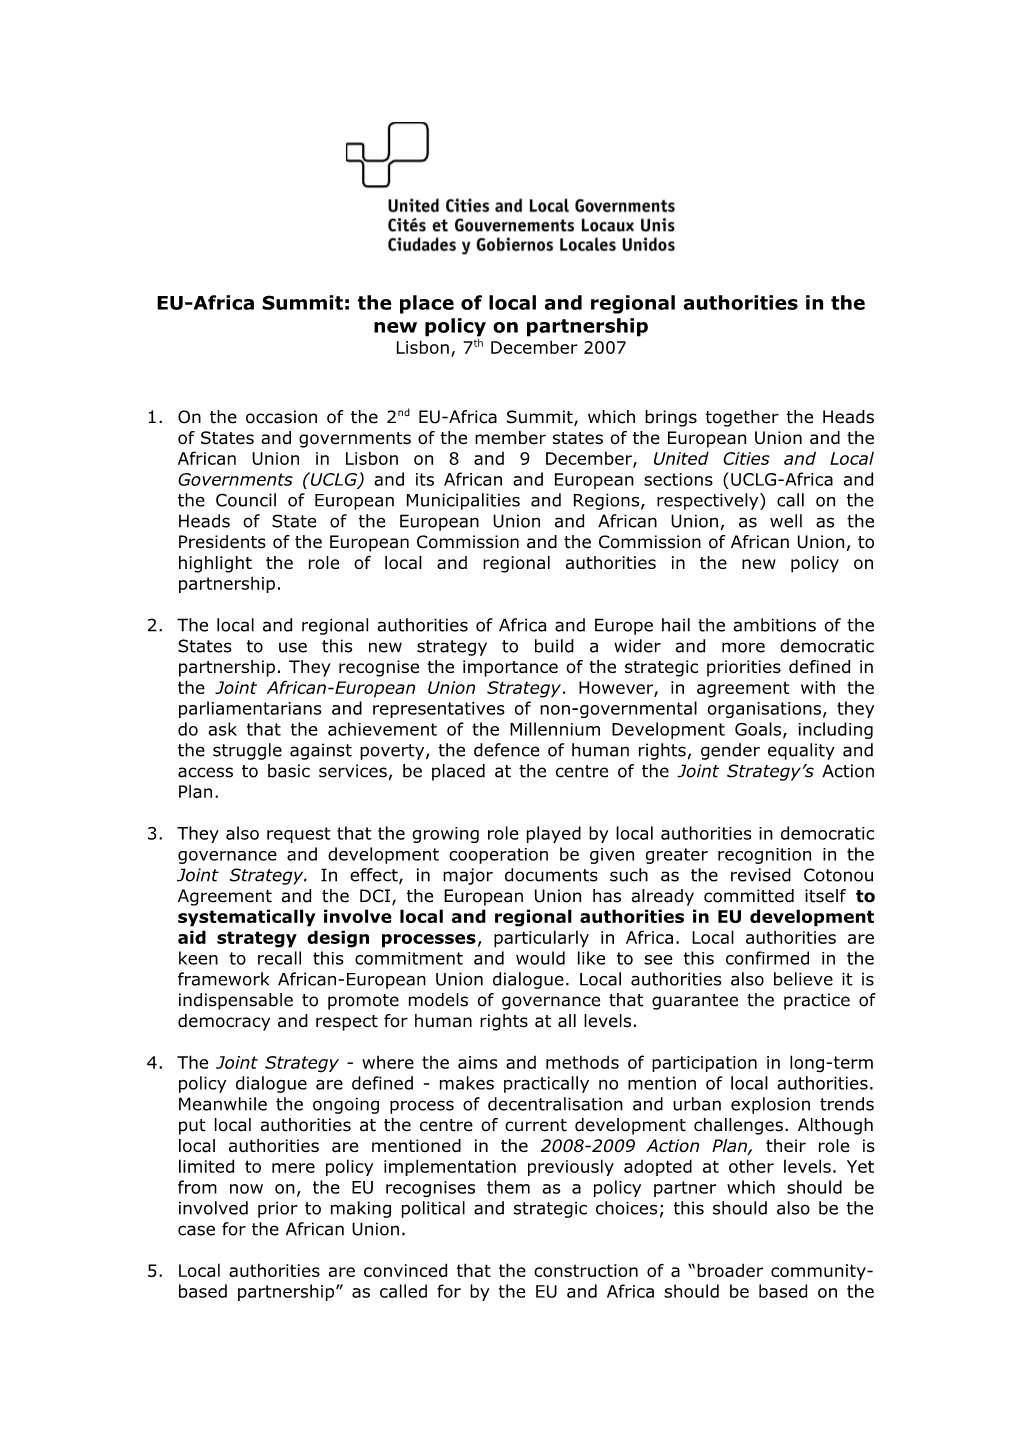 Sommet UE-Afrique: La Place Des Autorités Locales Dans La Nouvelle Politique De Partenariat